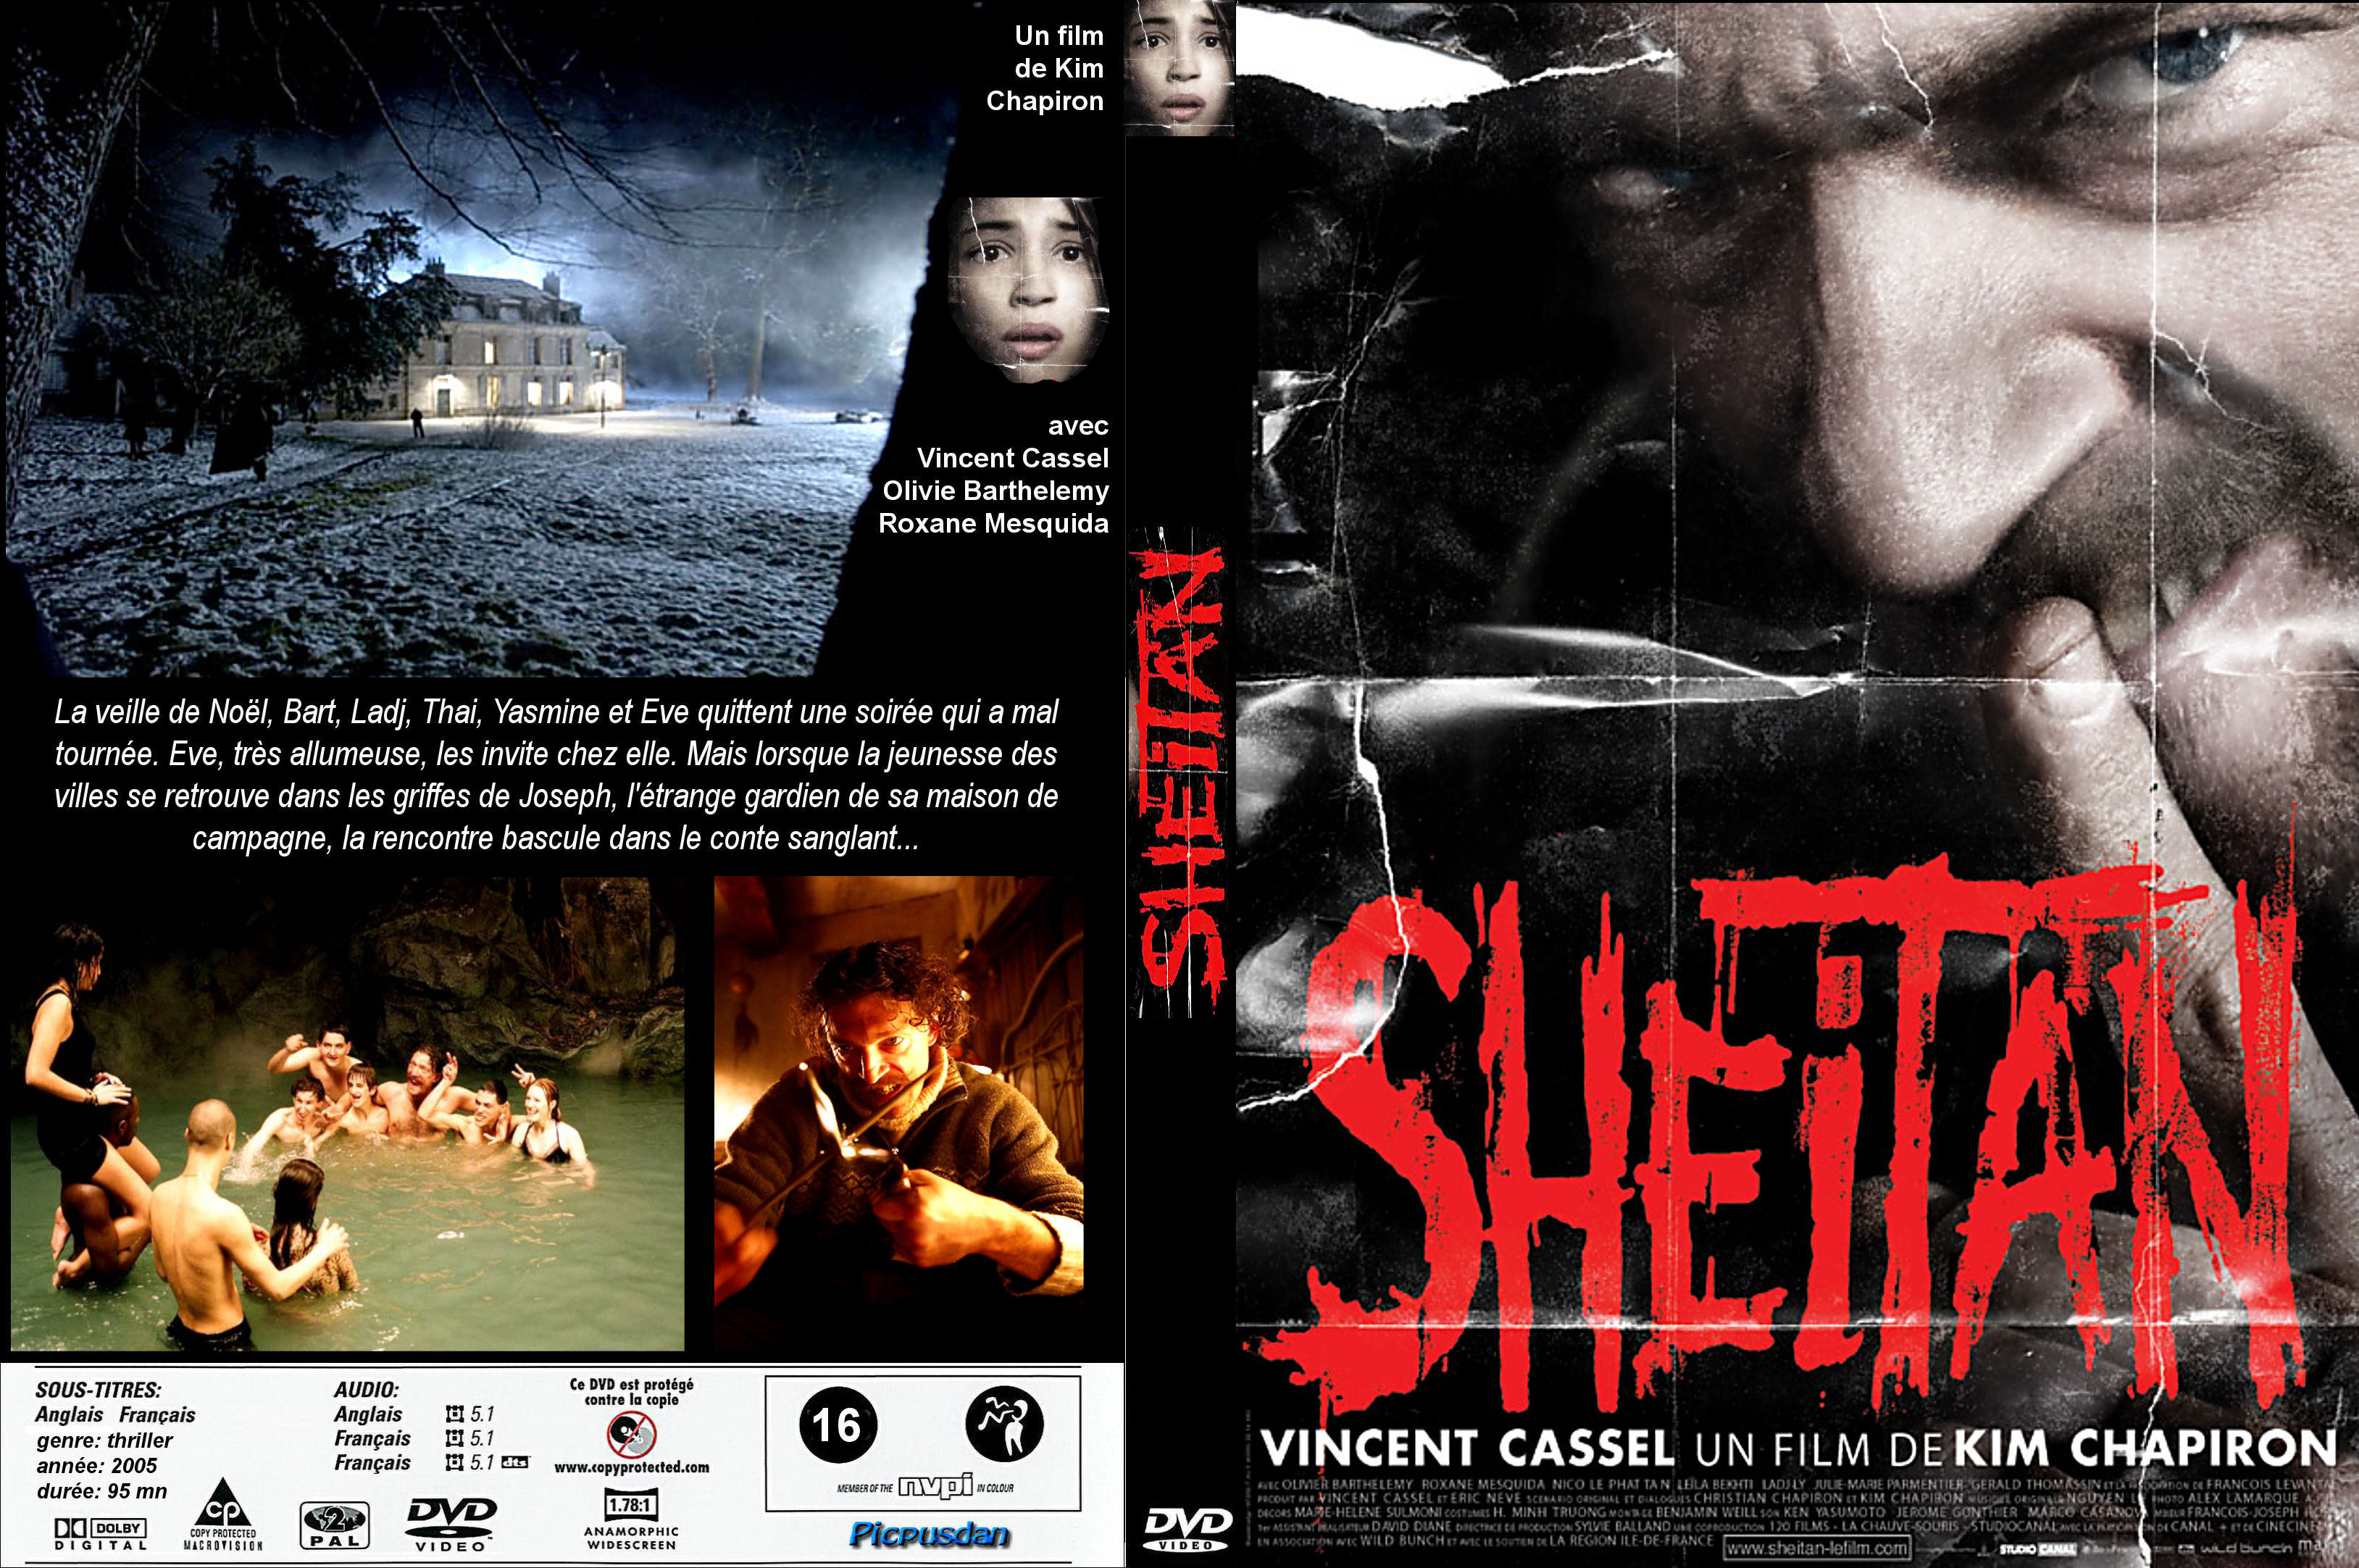 Stiahni si Filmy DVD Satan / Le Sheitan (2006)(CZ/FR) = CSFD 42. 